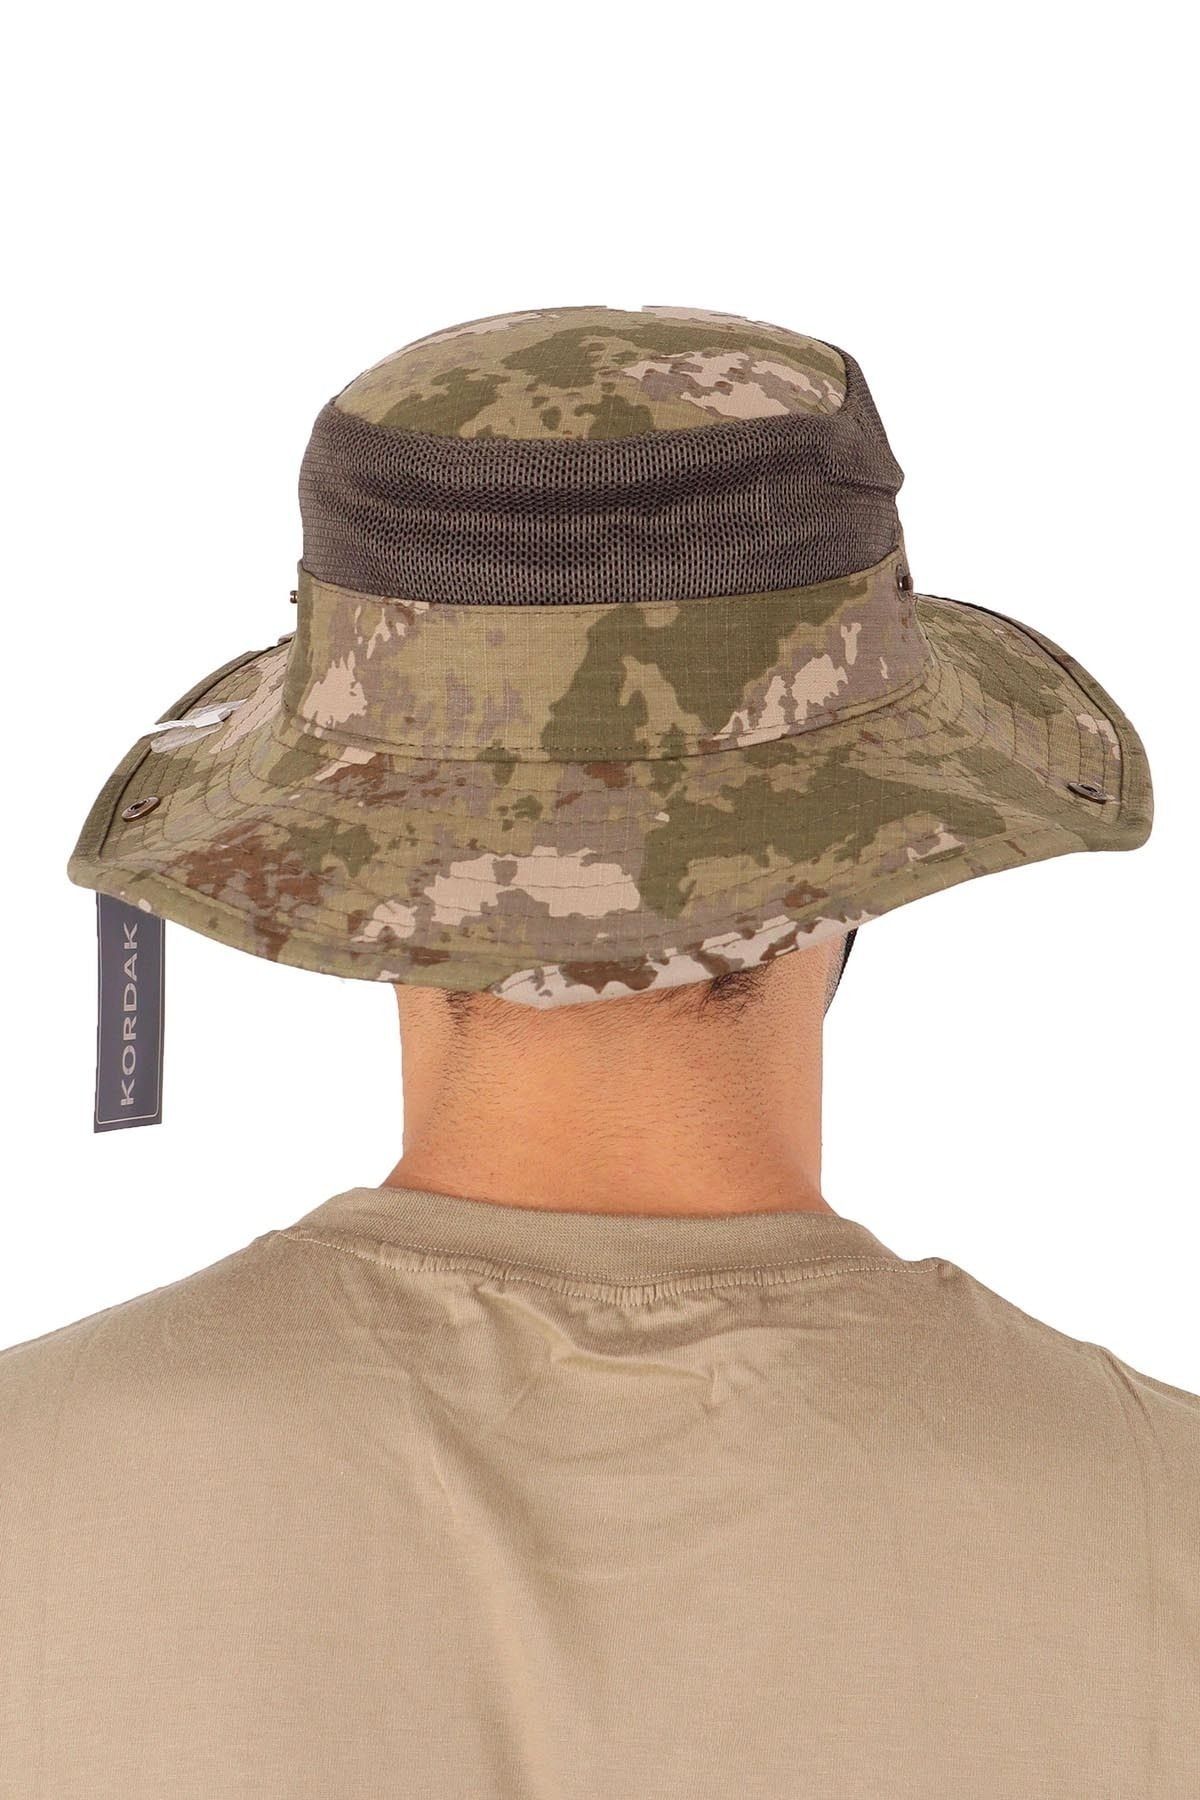 Asker Kolisi Askeri Kamuflaj Jungle Şapka - Askeri Fötr Operasyon Şapkası